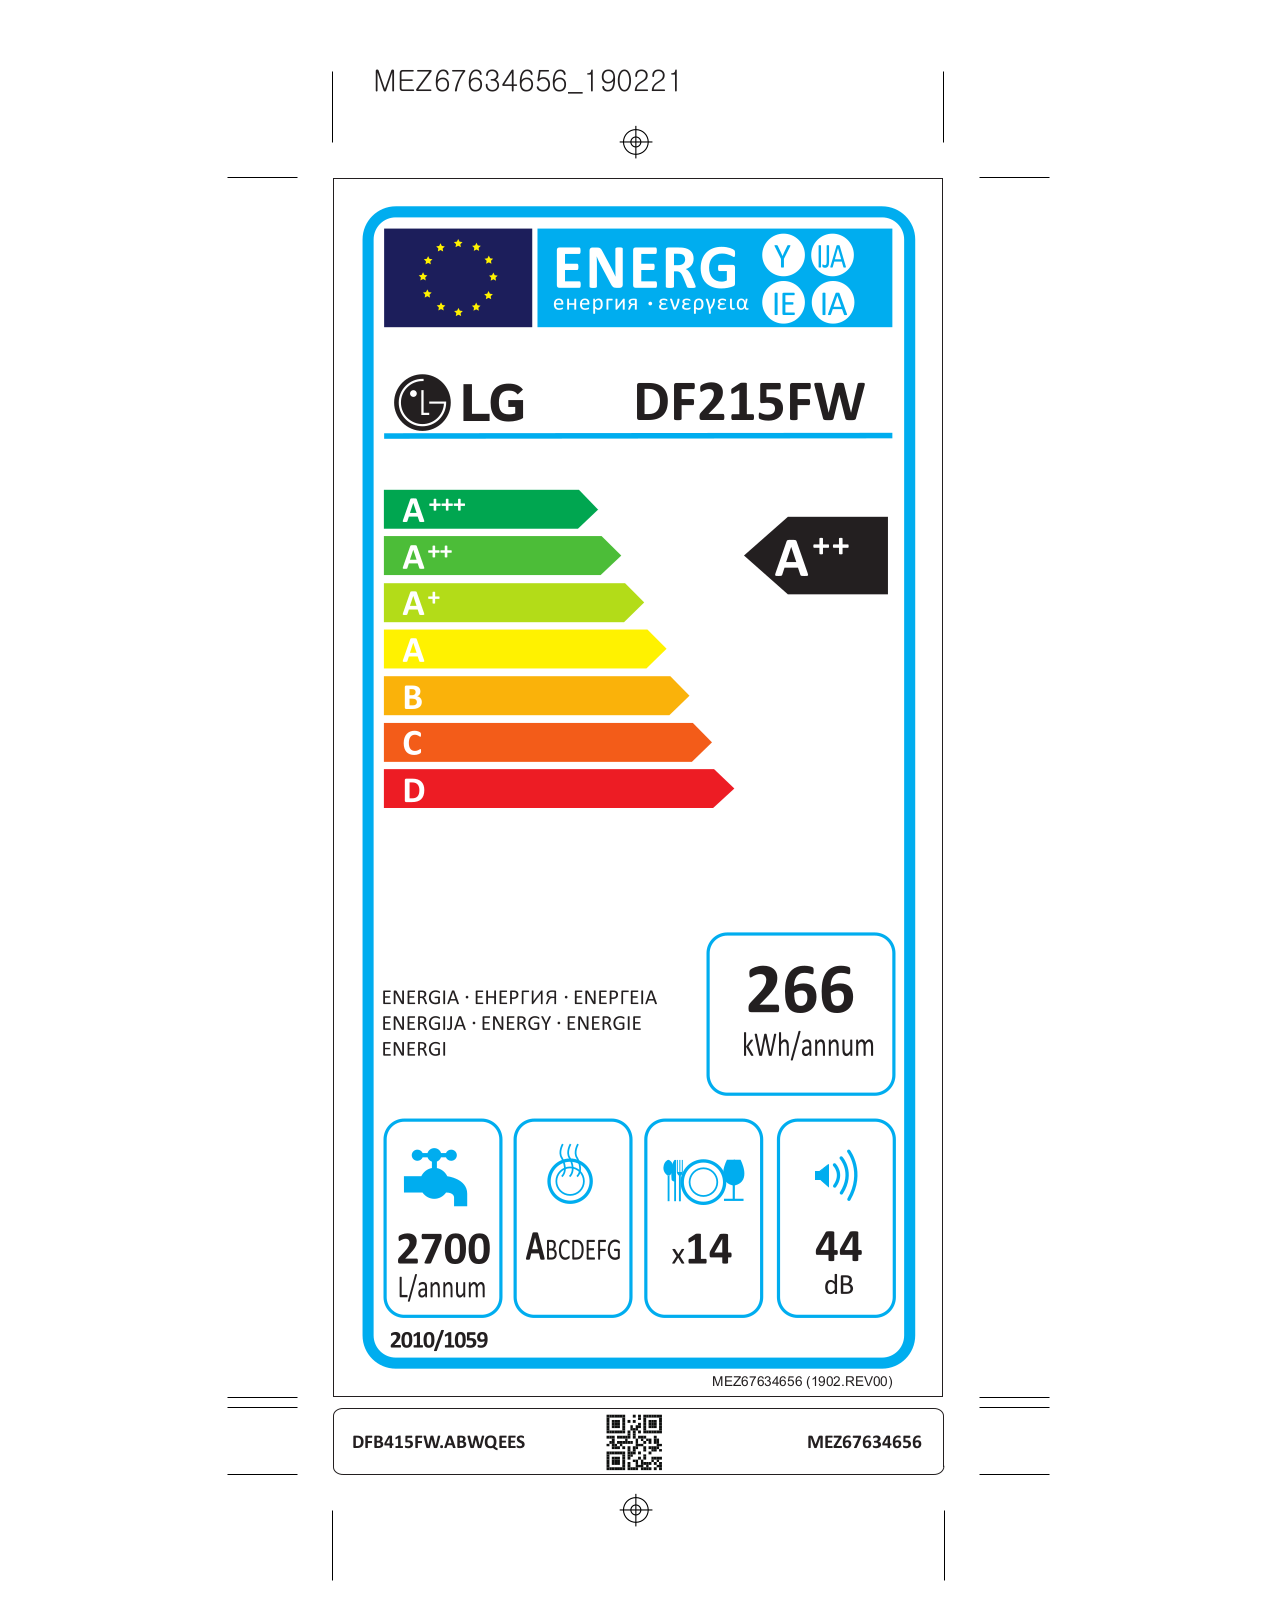 LG DF215FW Energy label